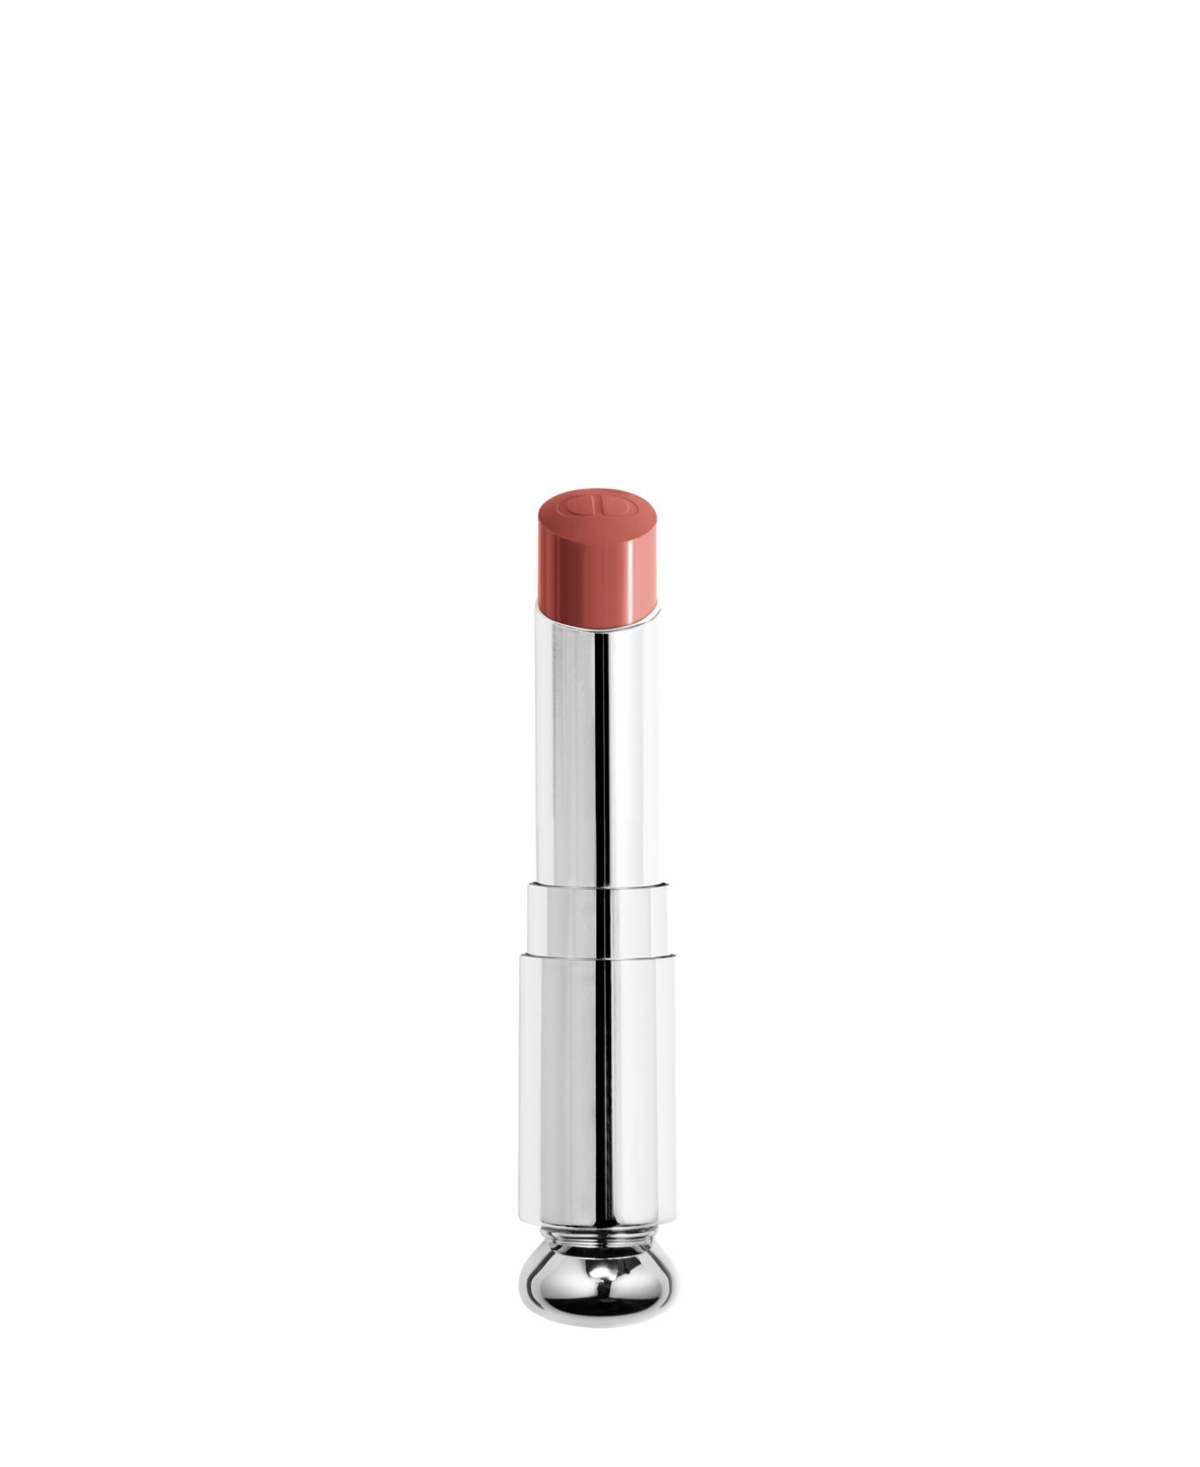 Dior Addict Shine Lipstick Refill In Bandana (nude)